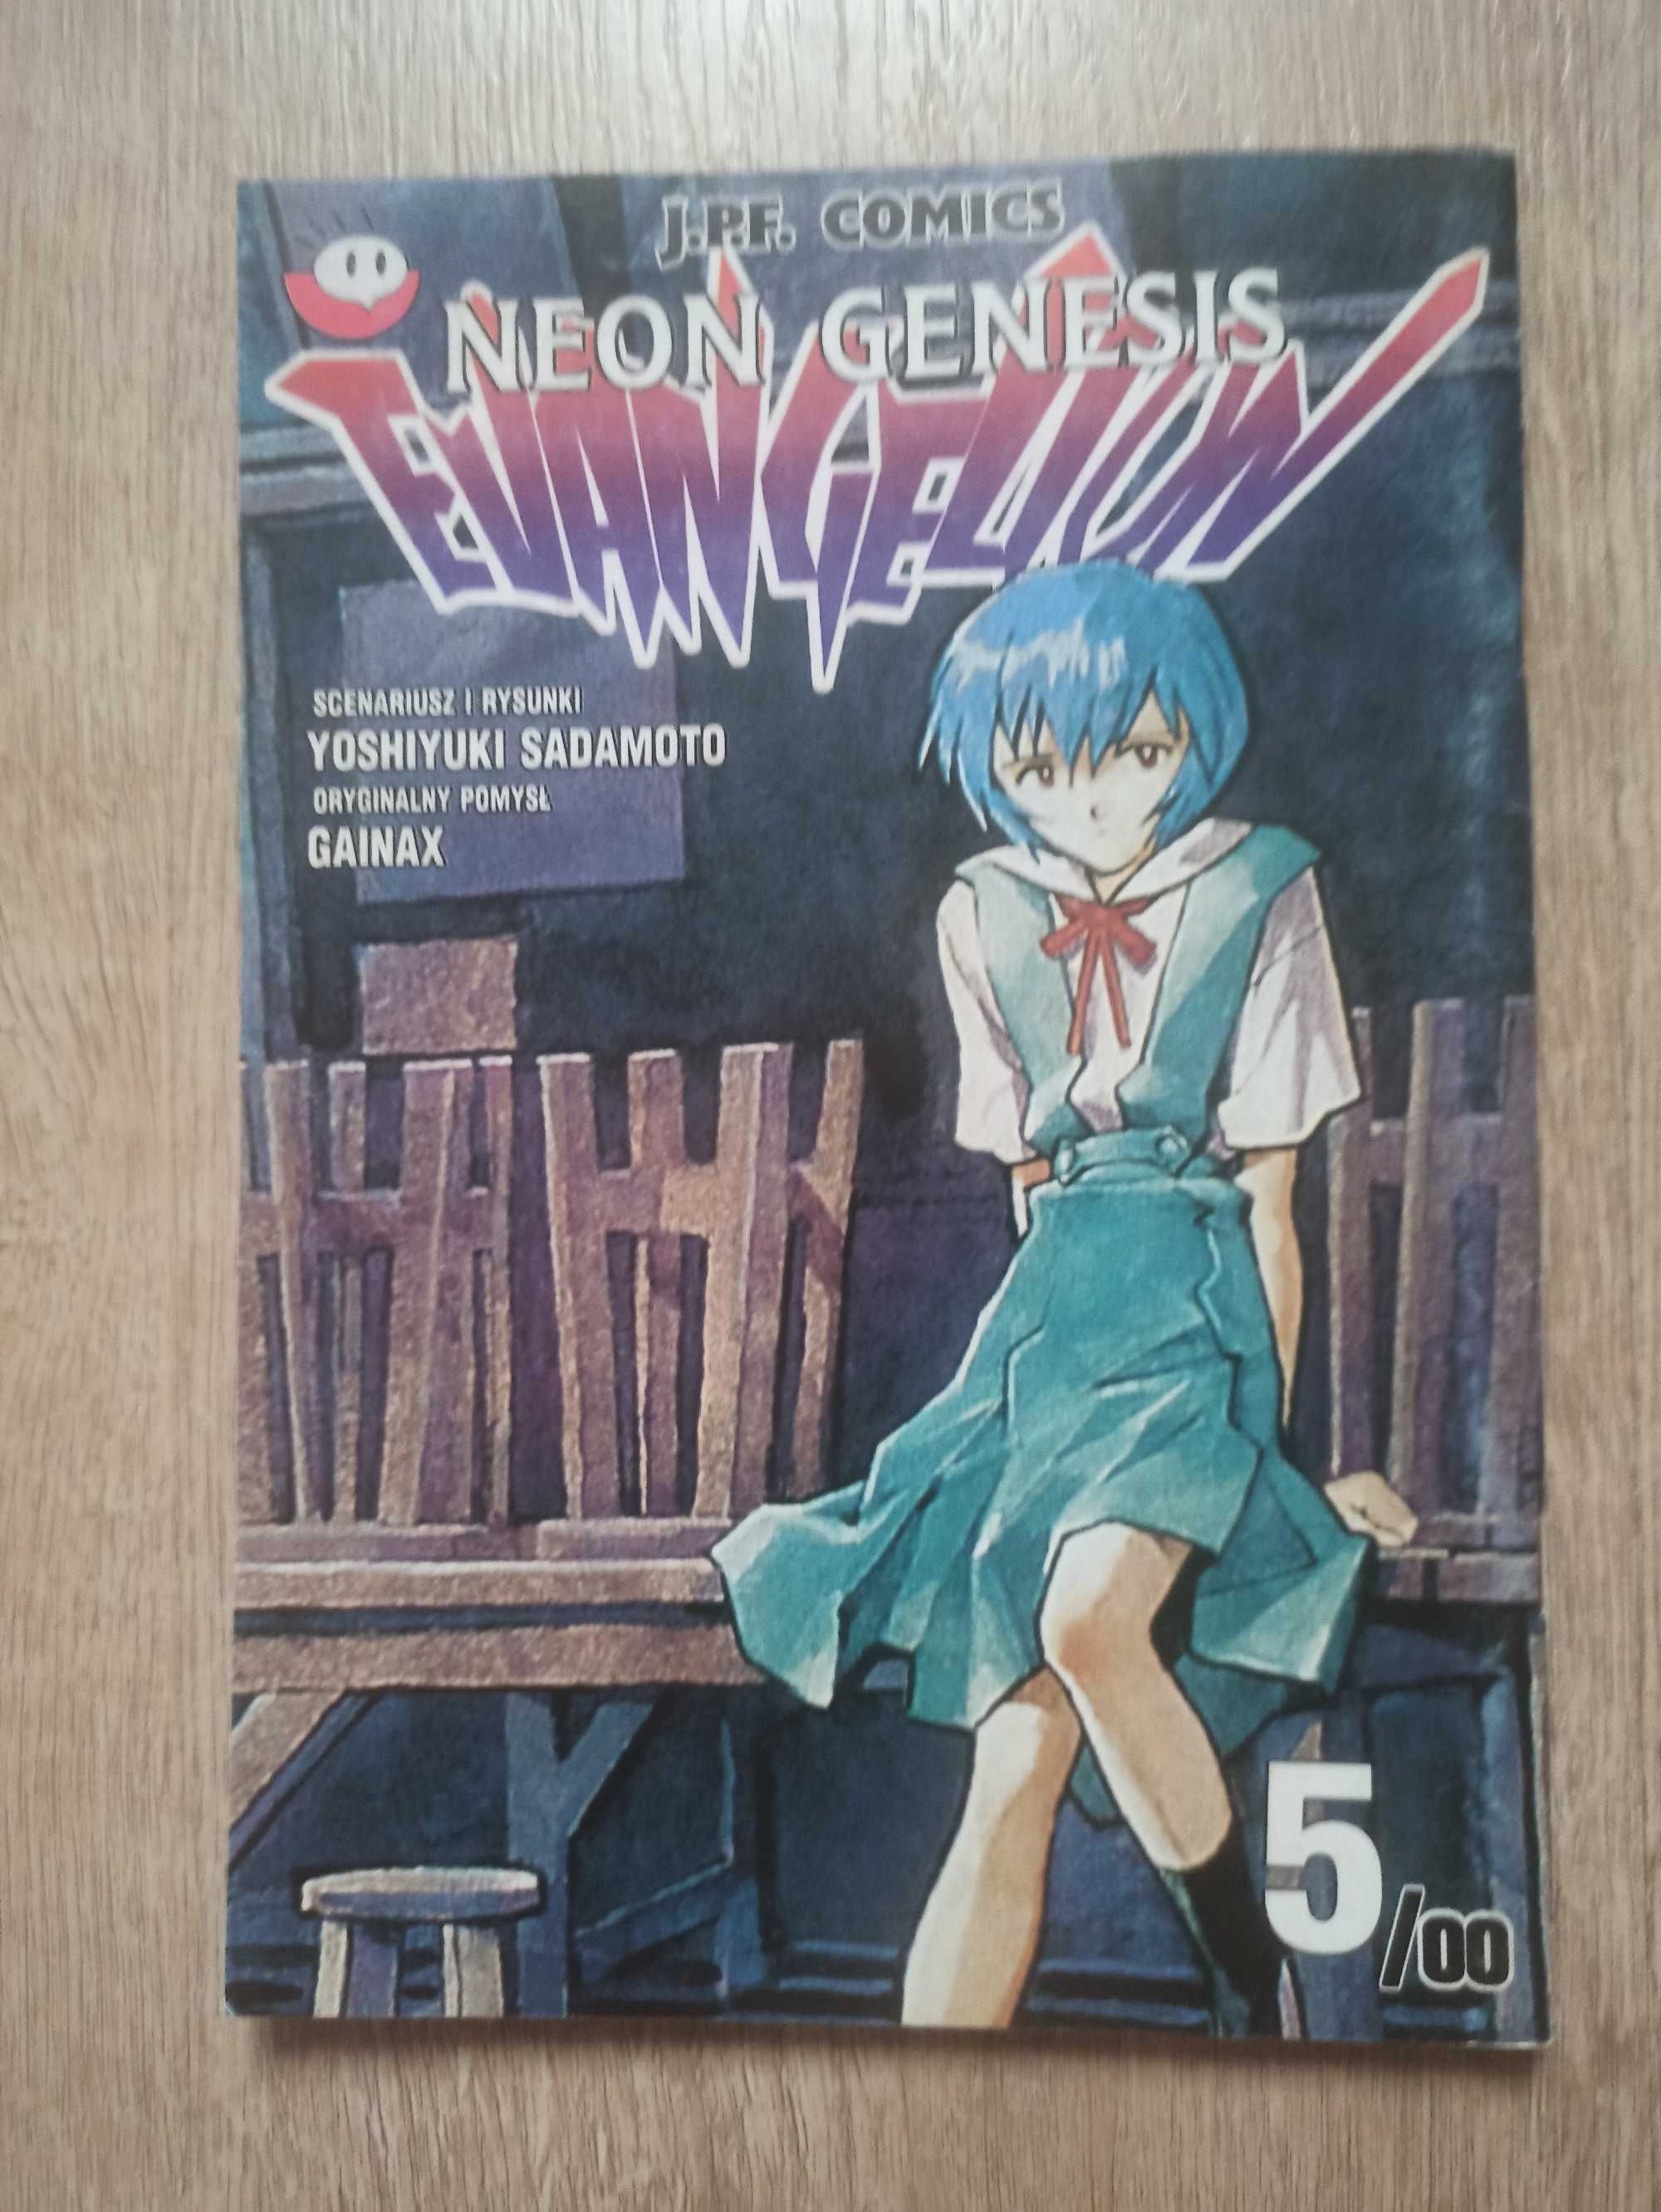 Yoshiyuki Sadamoto - Neon Genesis Evangelion 5/00